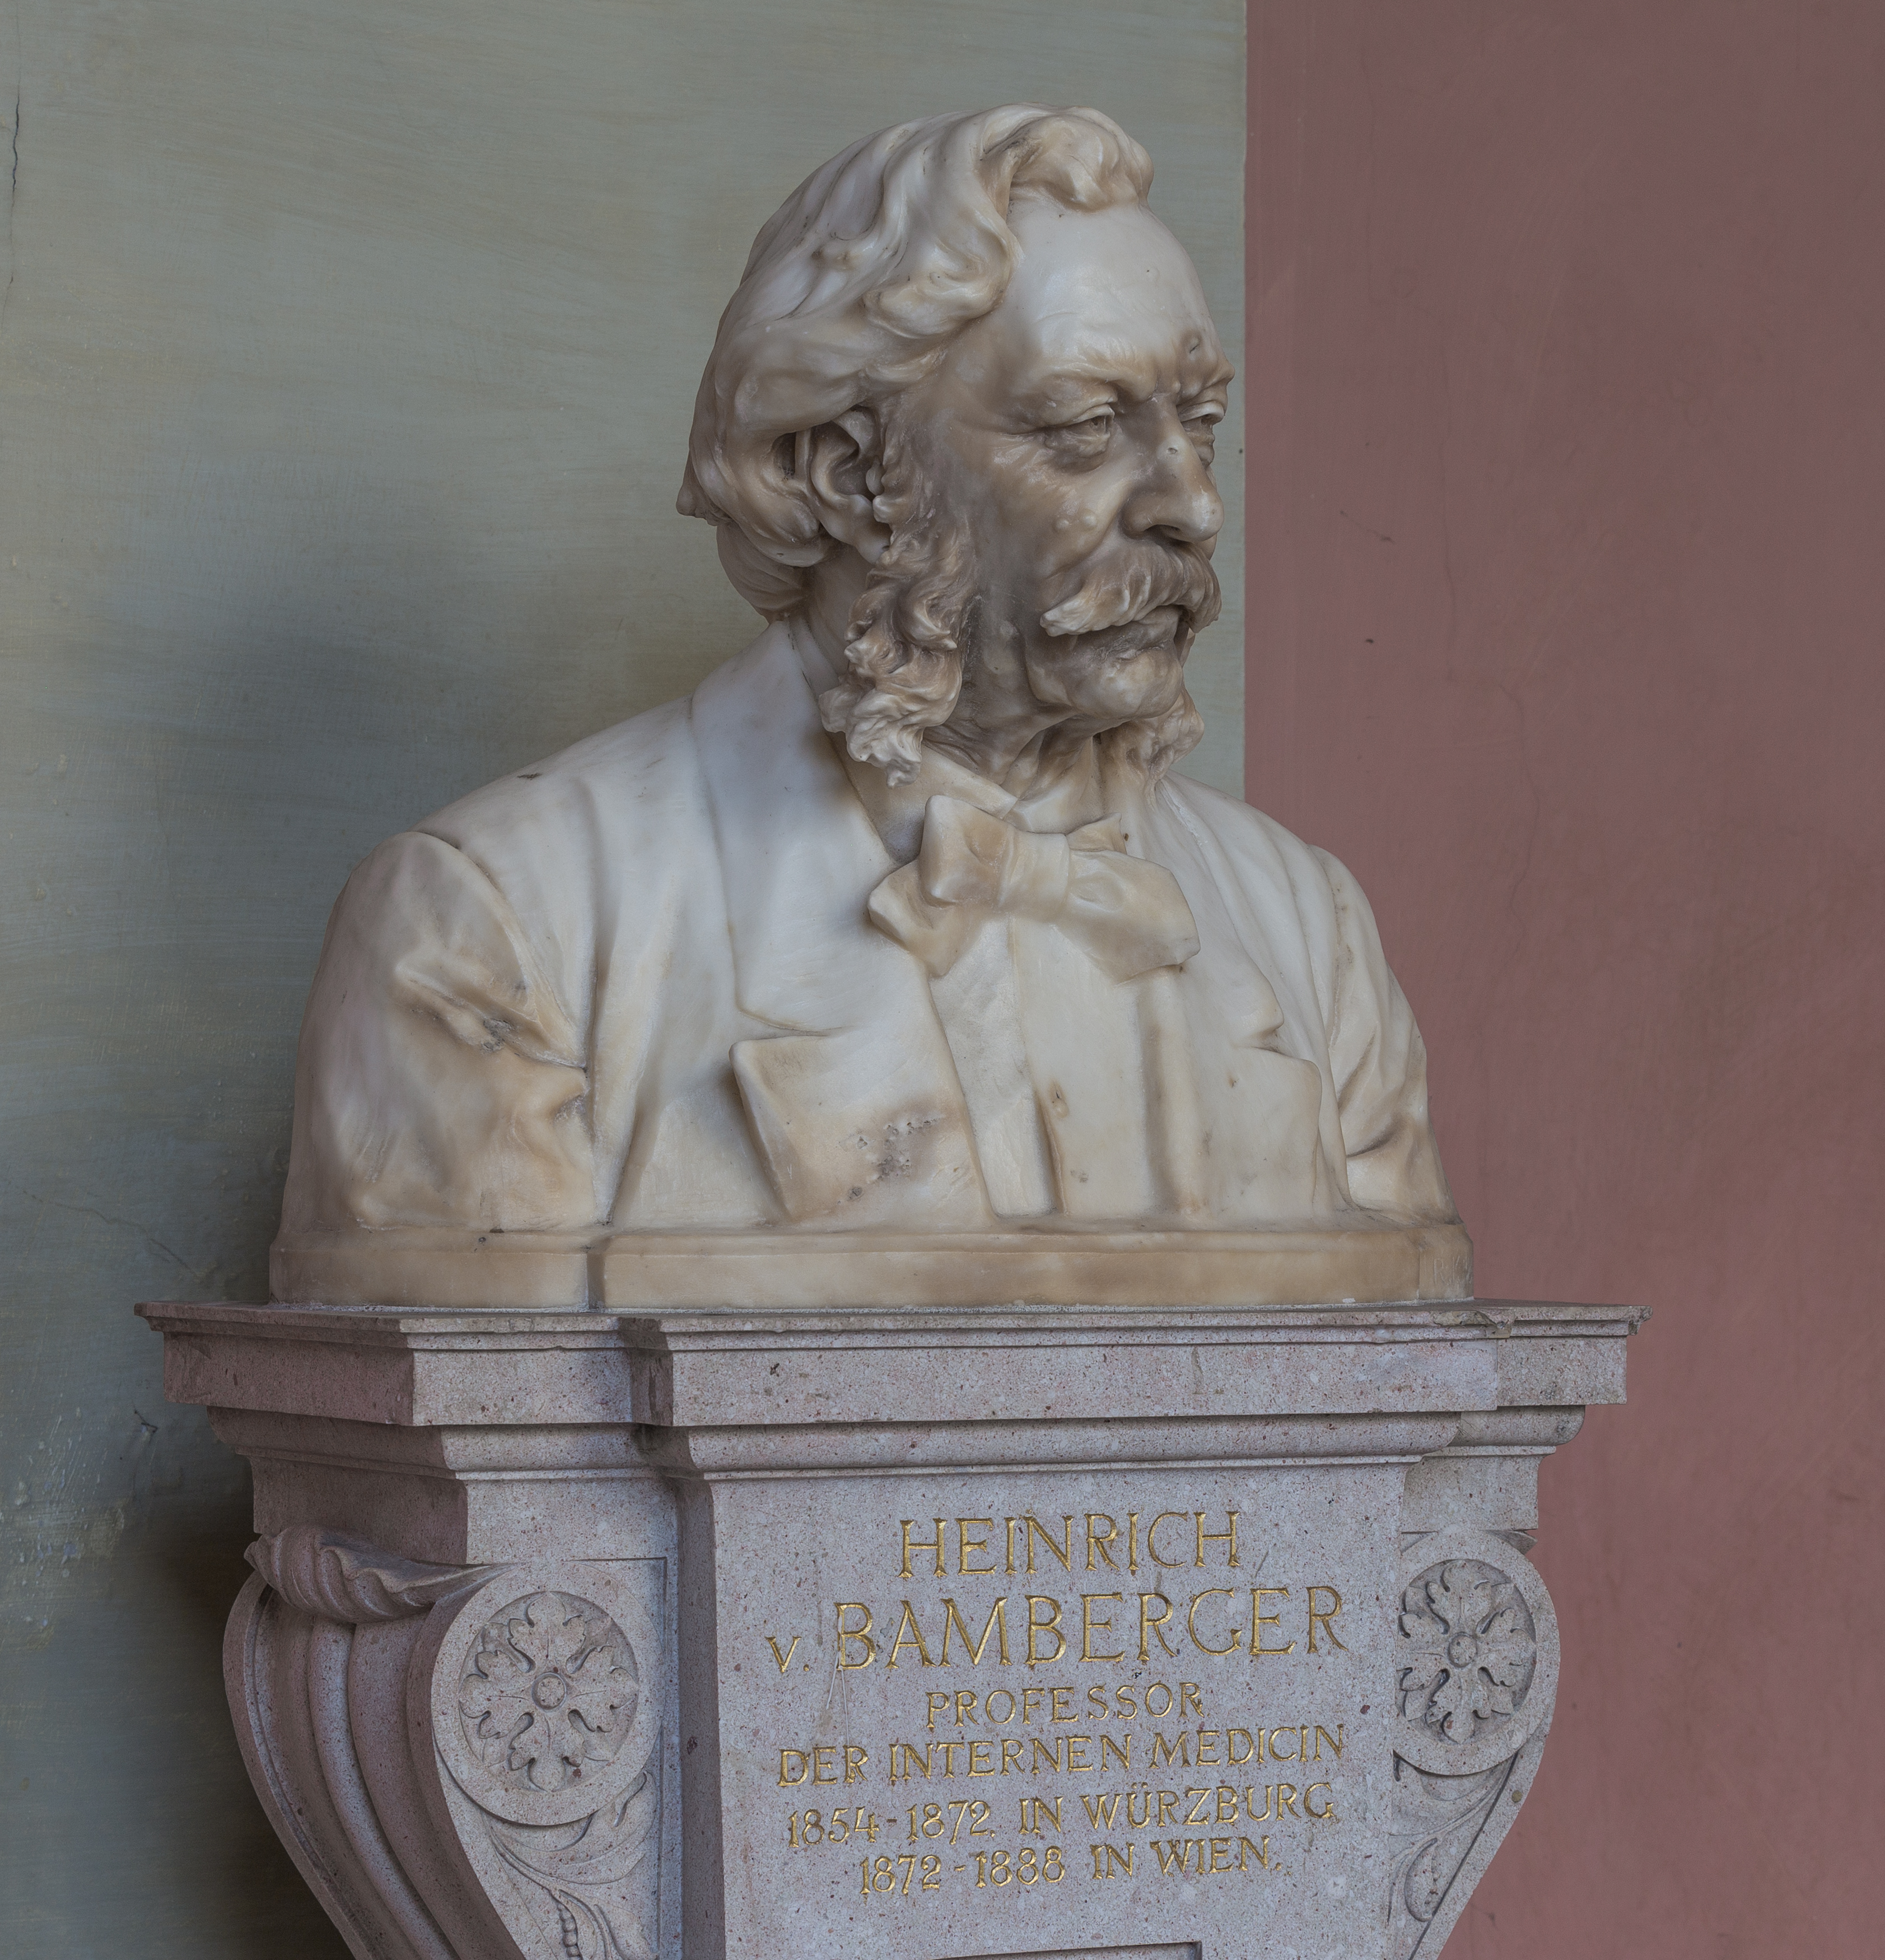 Heinrich von Bamberger (1822-1888), Nr. 70 bust (marble) in the Arkadenhof of the University of Vienna-1294